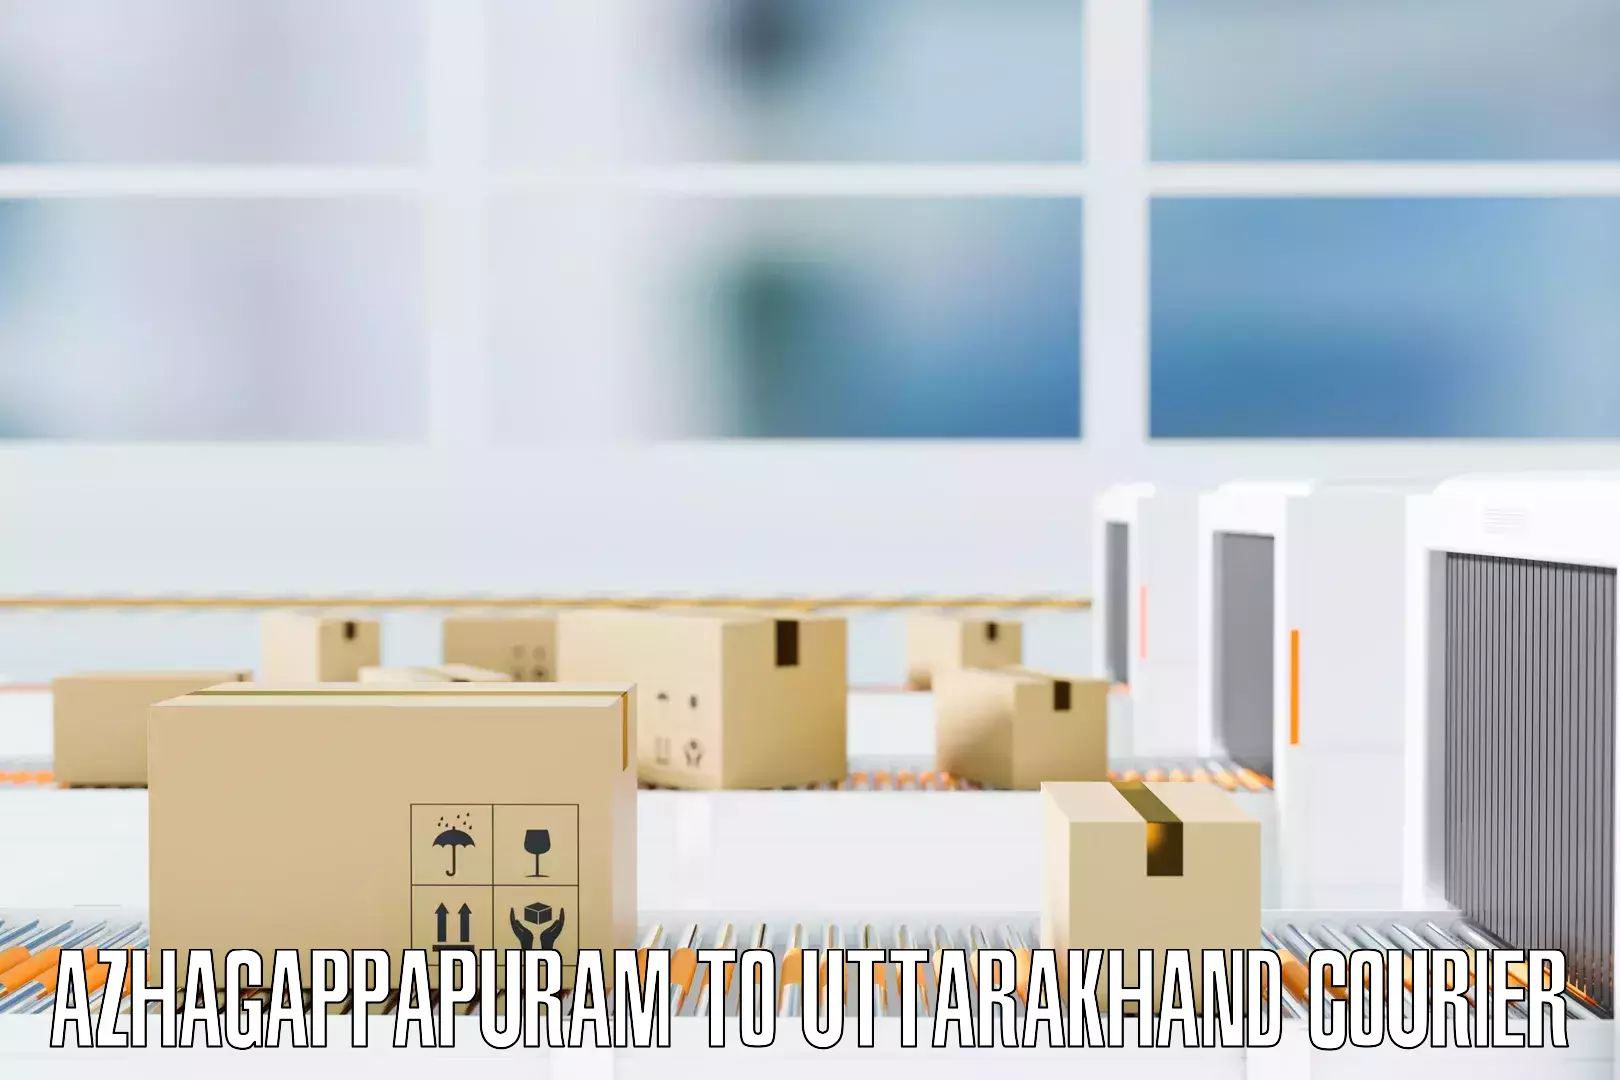 Trusted furniture movers Azhagappapuram to Gairsain